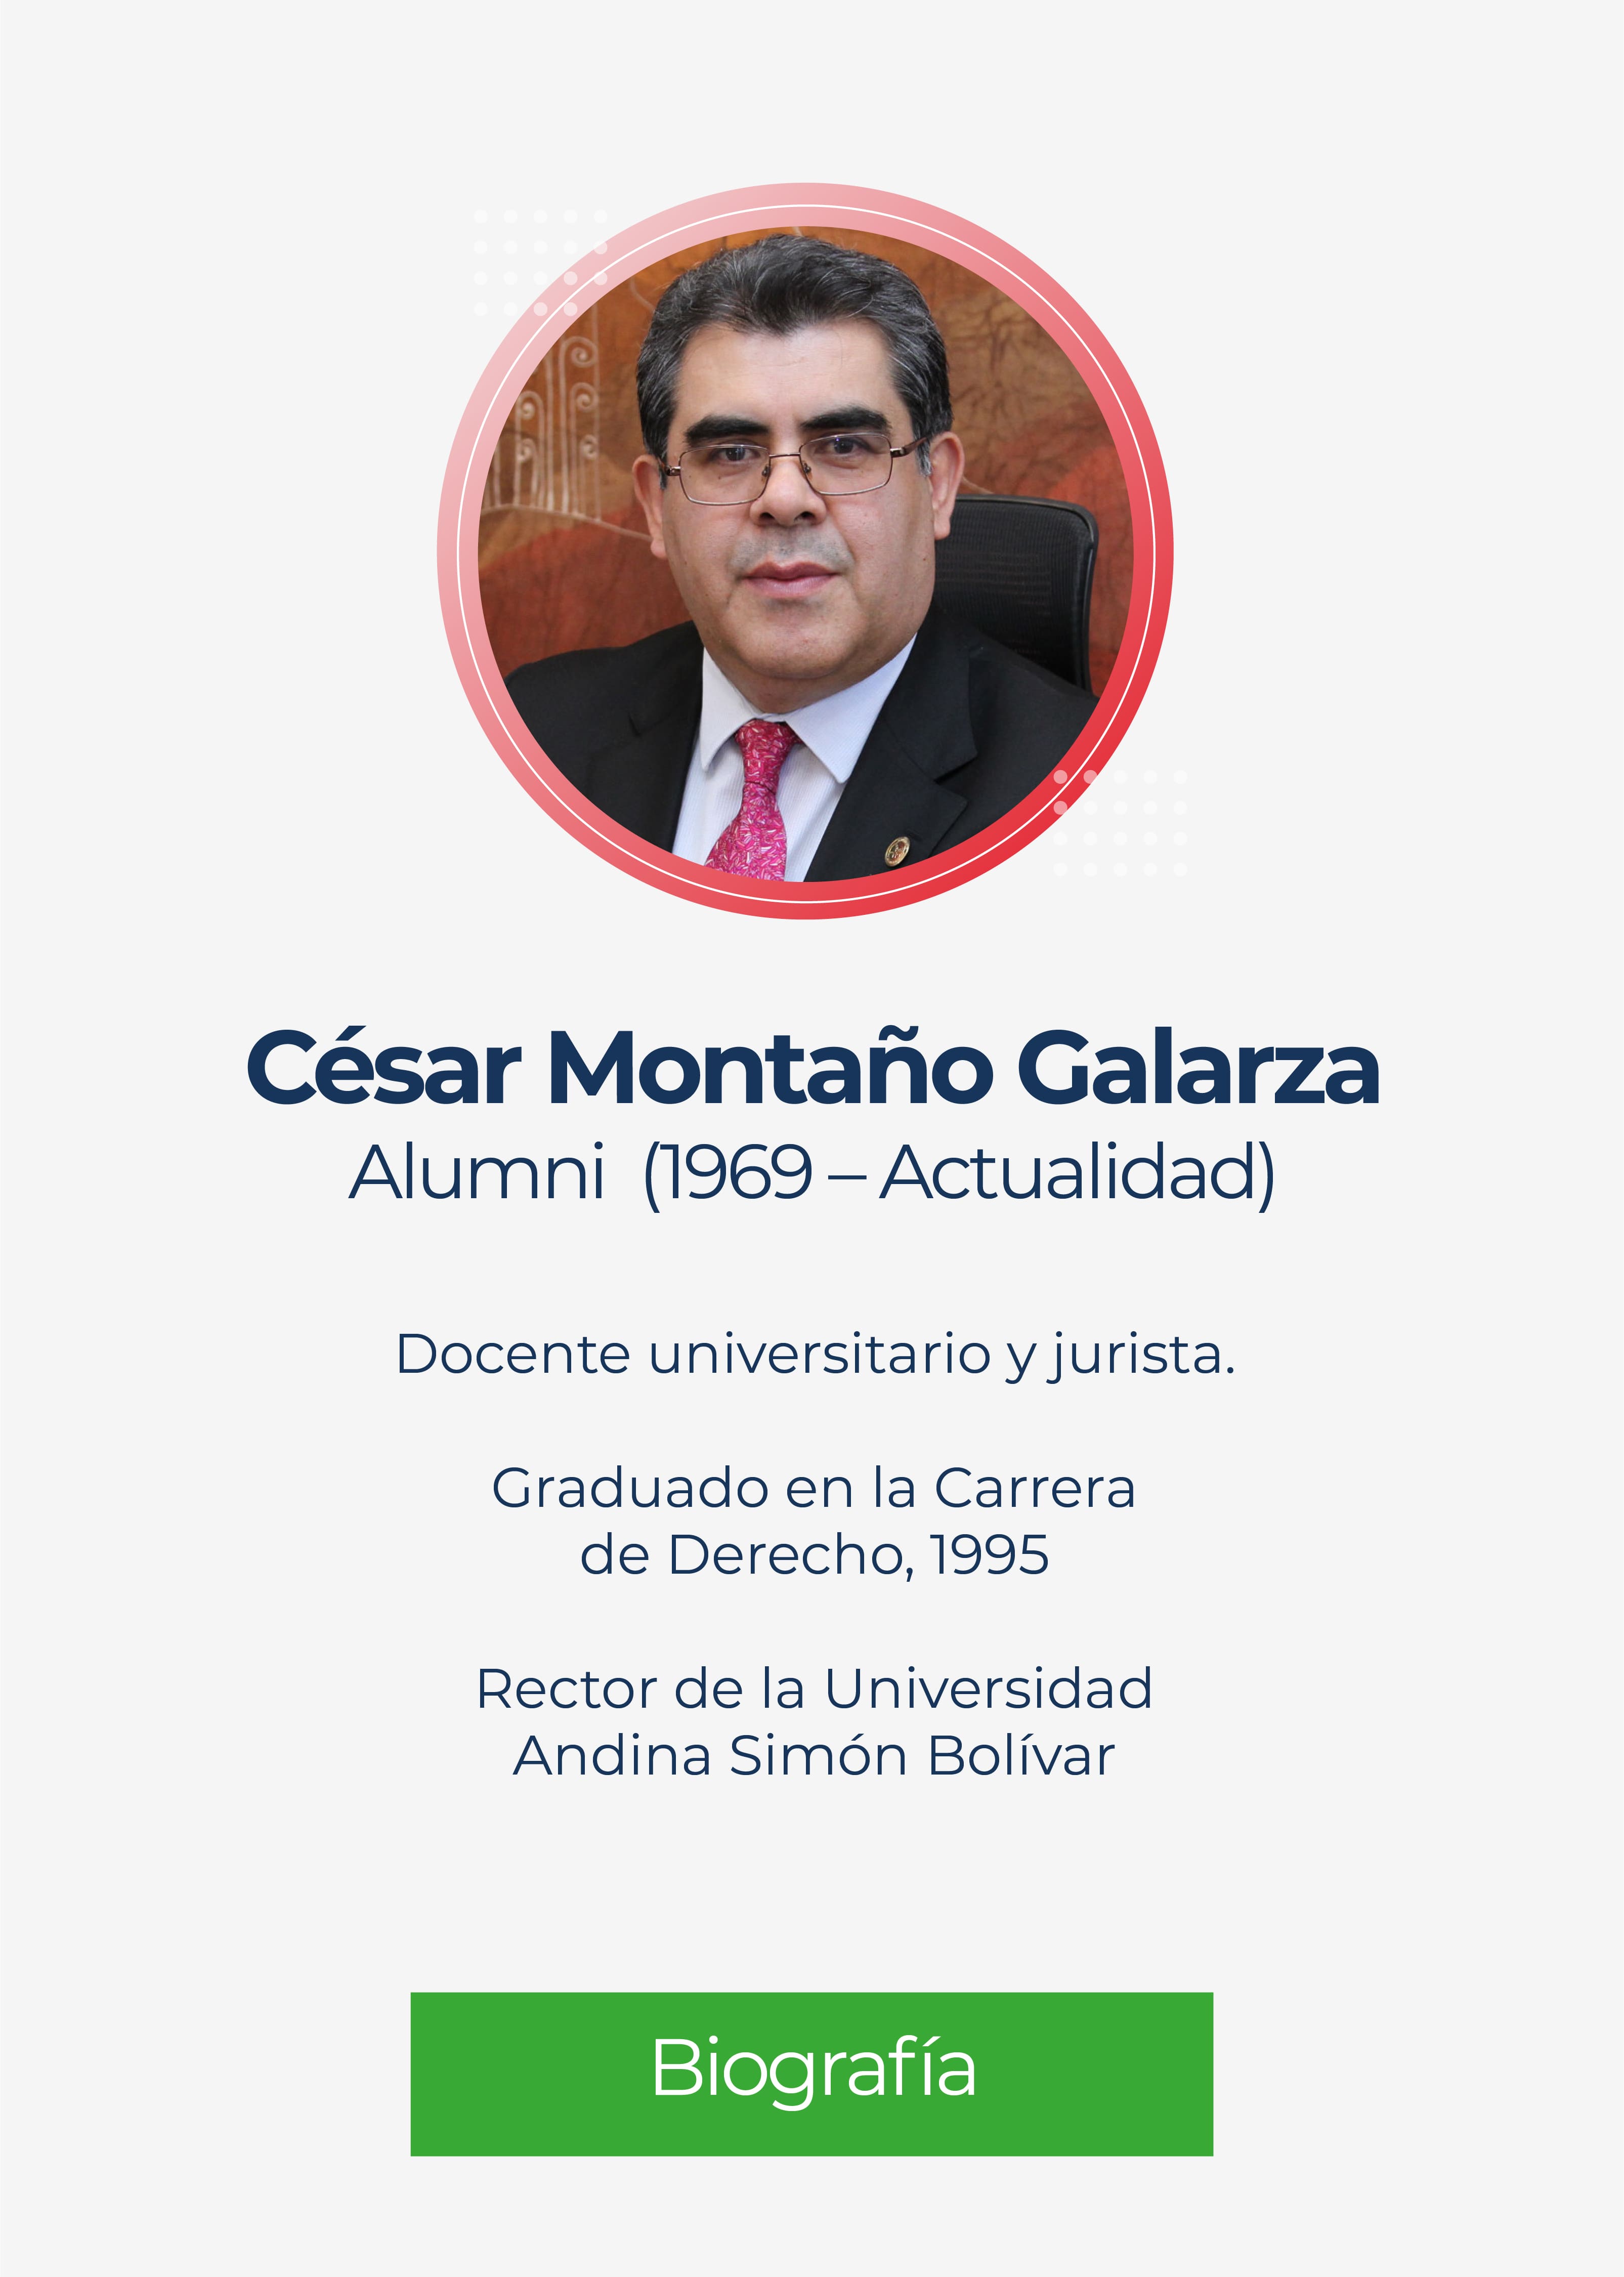 César Eduardo Montaño Galarza